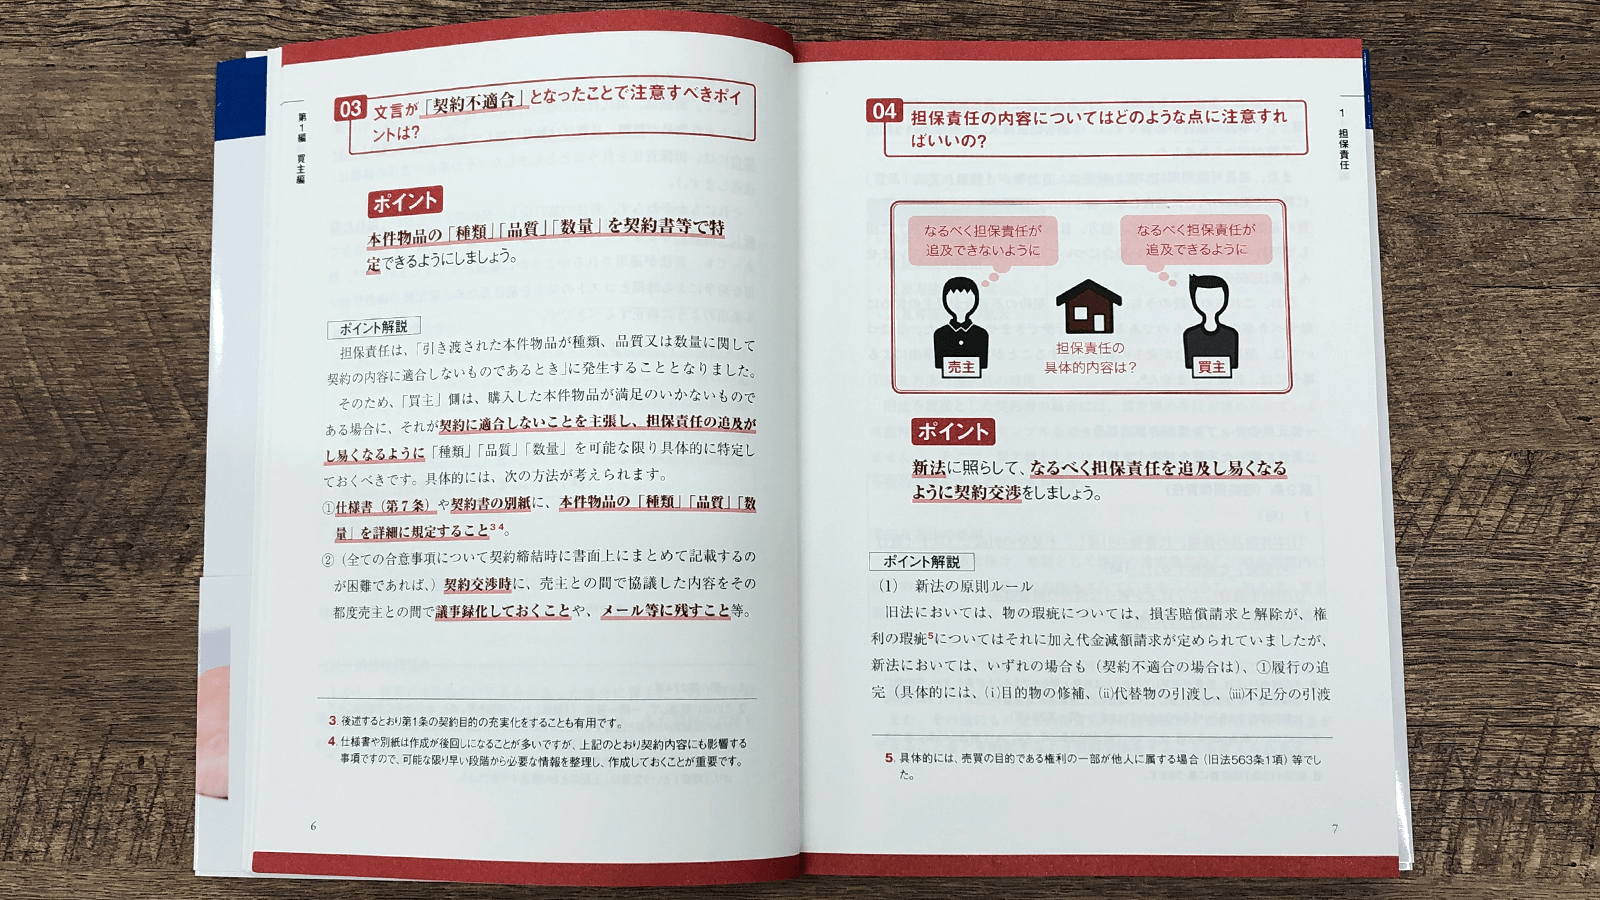 滝琢麿・菅野邑斗『はじめてでもわかる売買契約書』P6-7